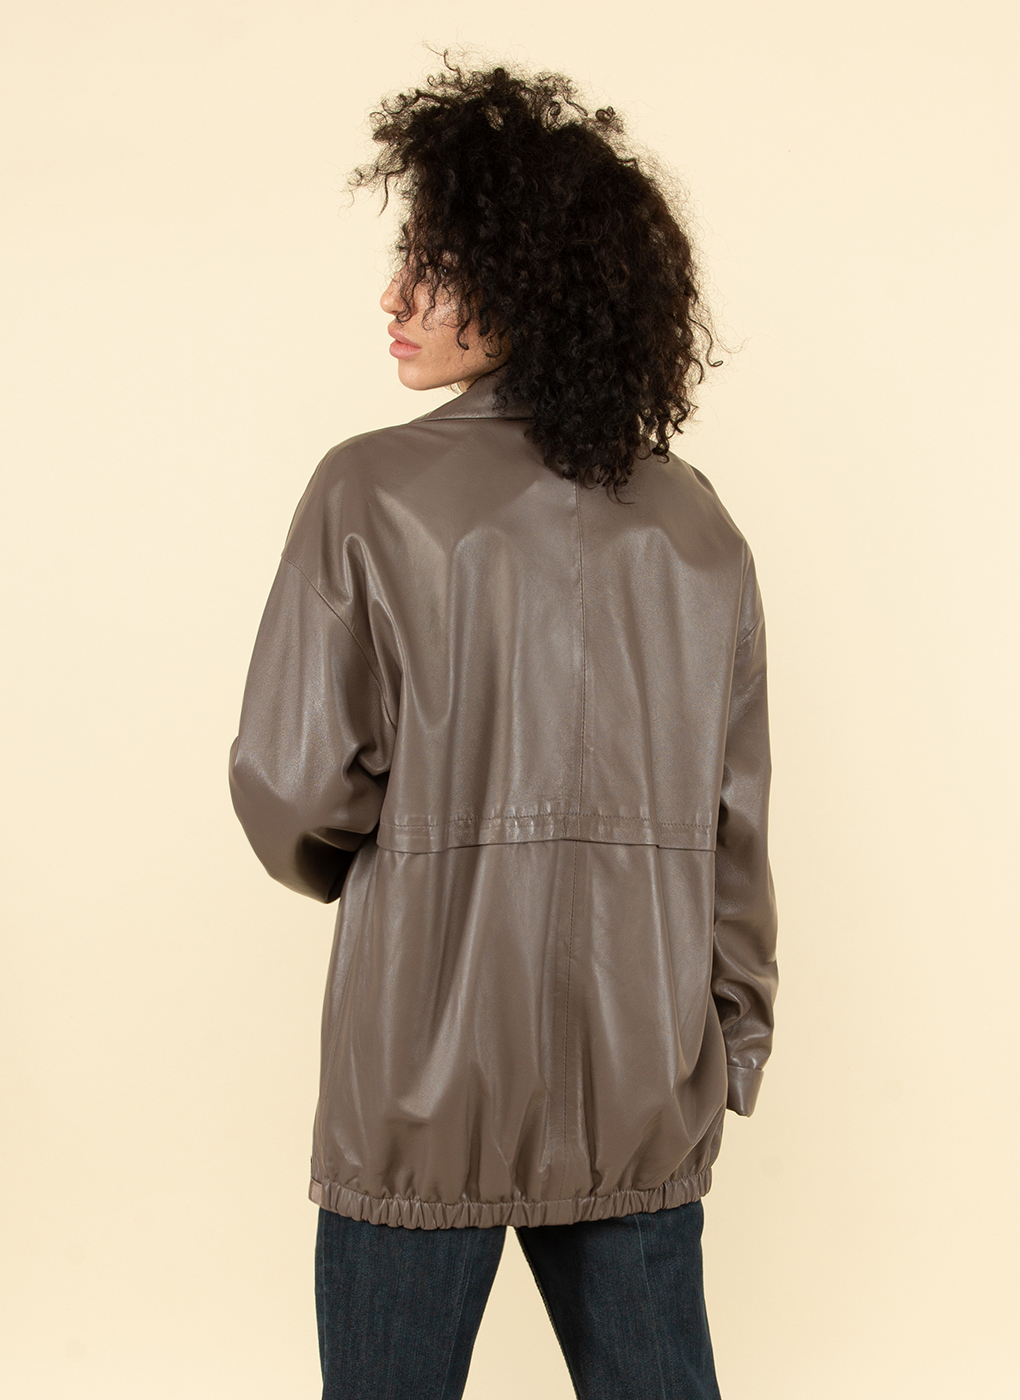 Кожаная куртка женская Каляев 52409 коричневая 56 RU